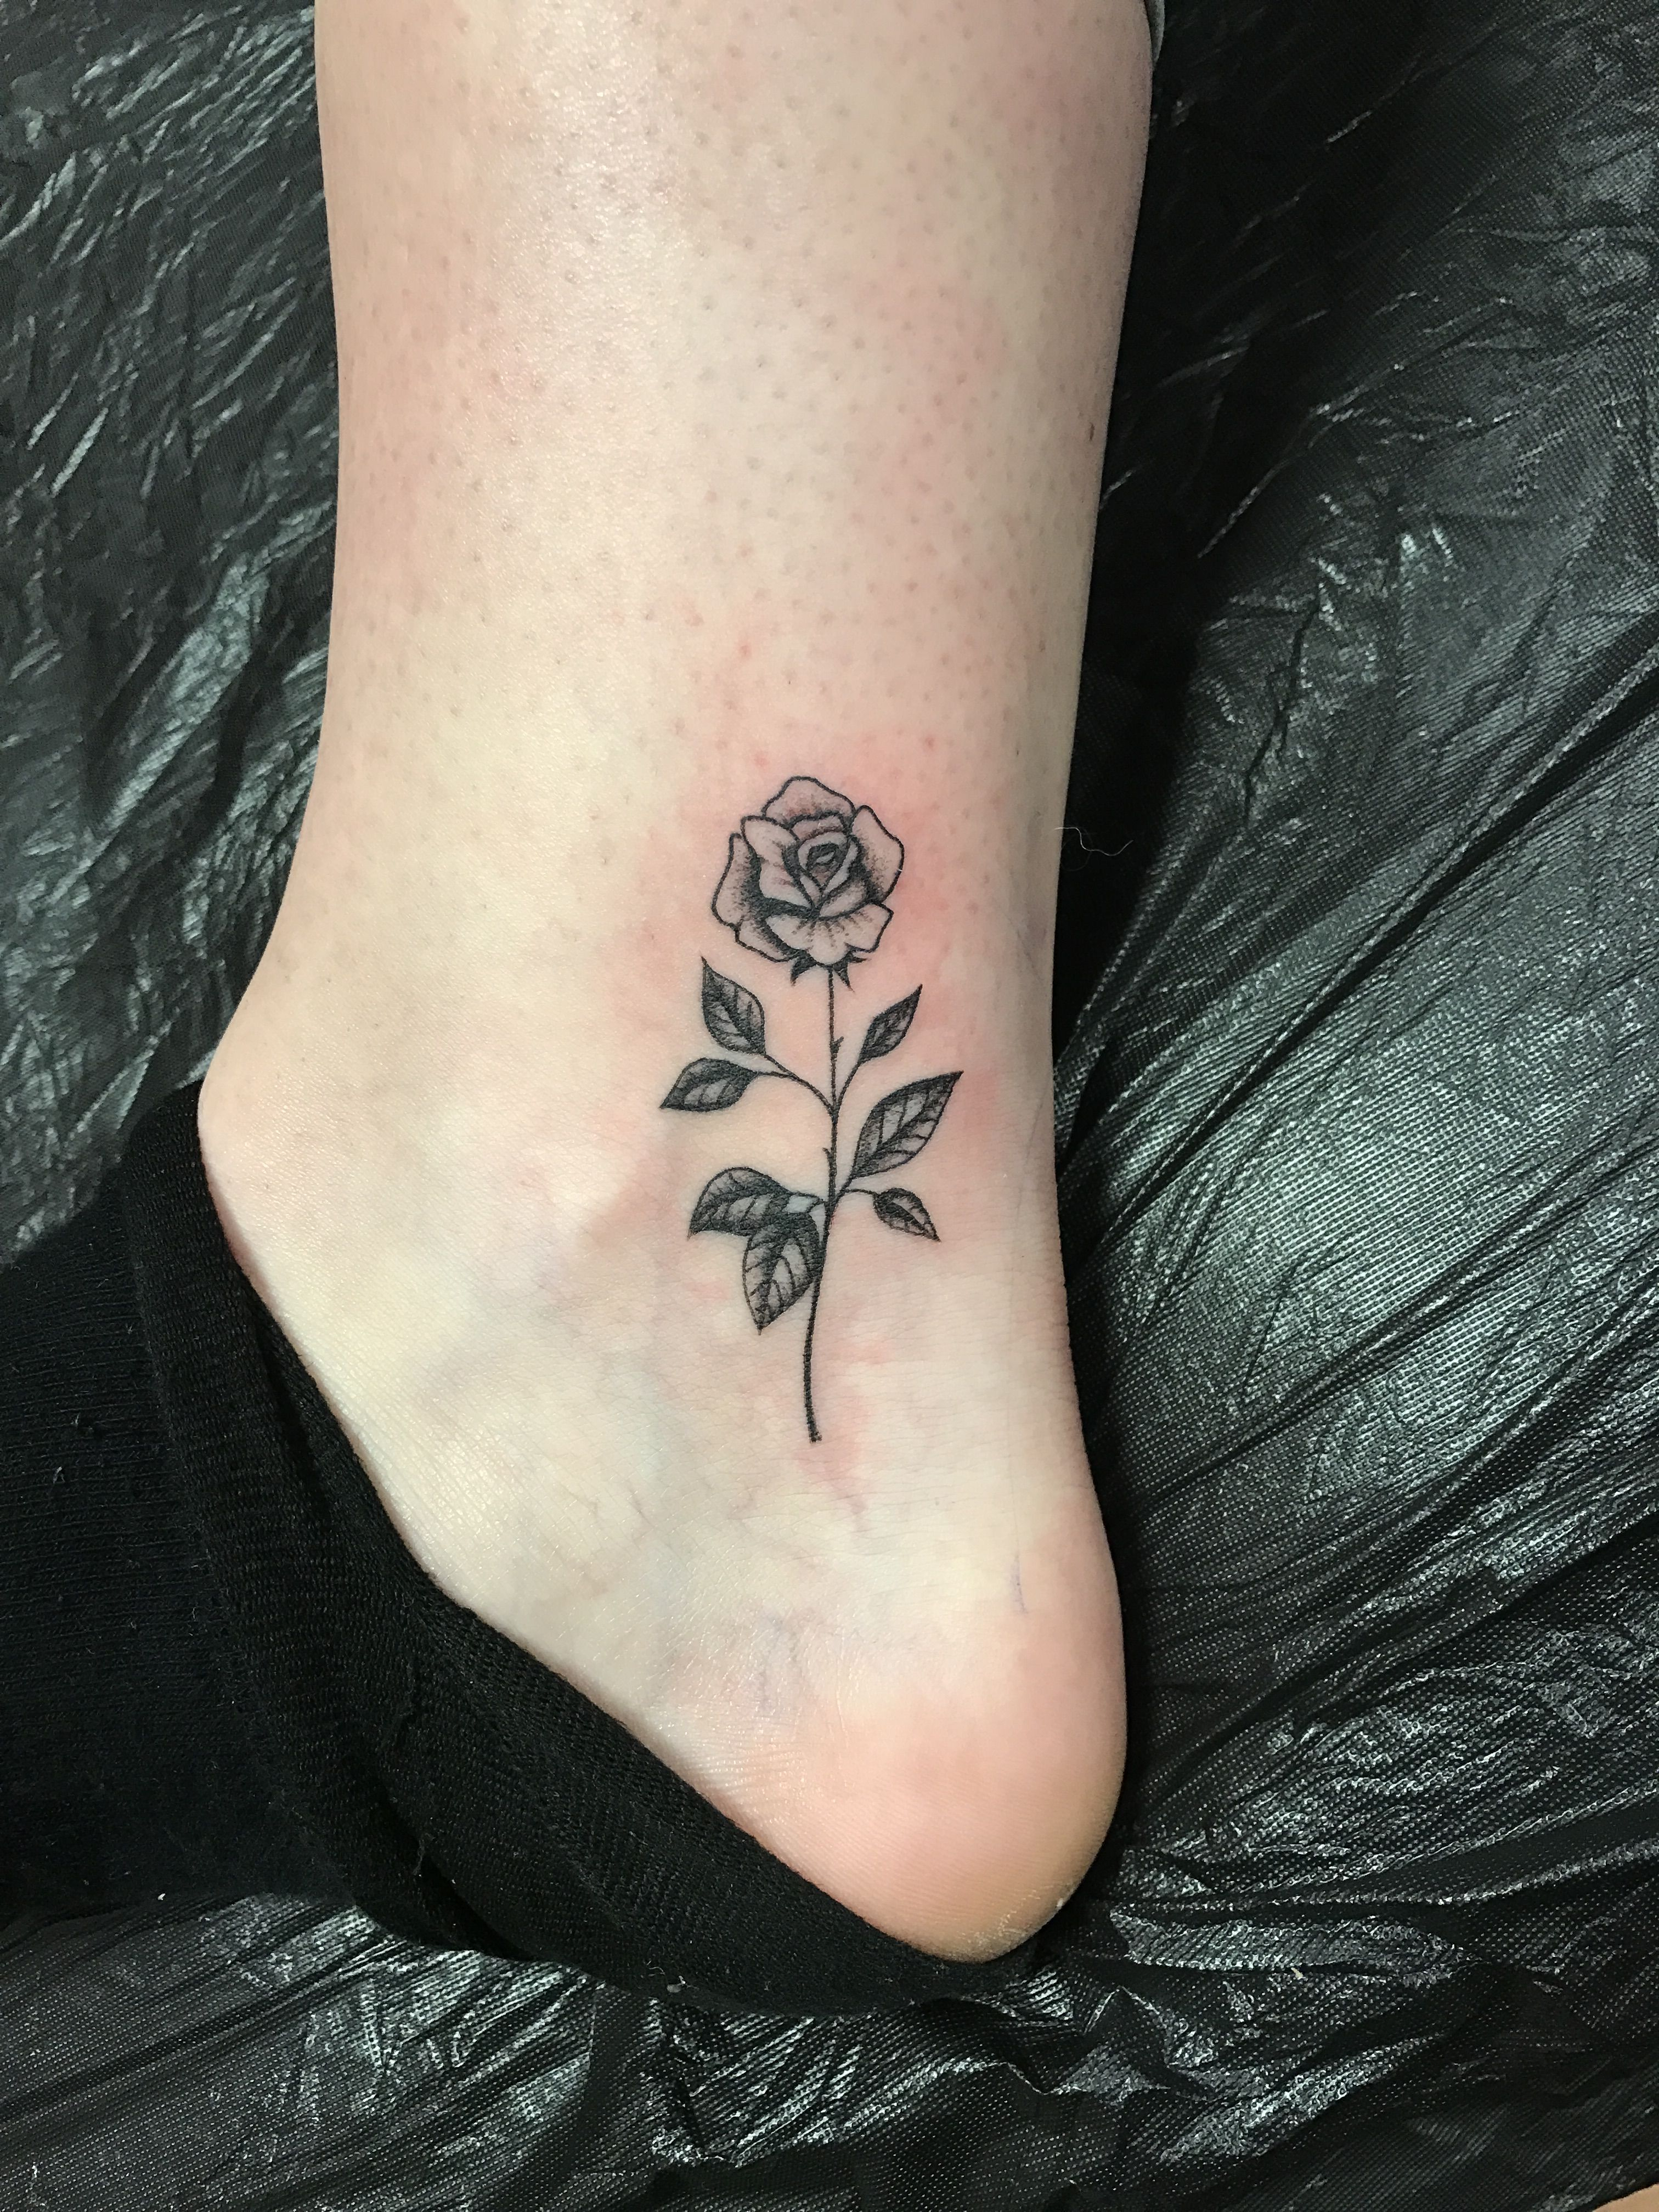 Small Rose Tattoo Tats Galore Tattoos Rose Tattoos Shoulder Tattoo inside sizing 3024 X 4032